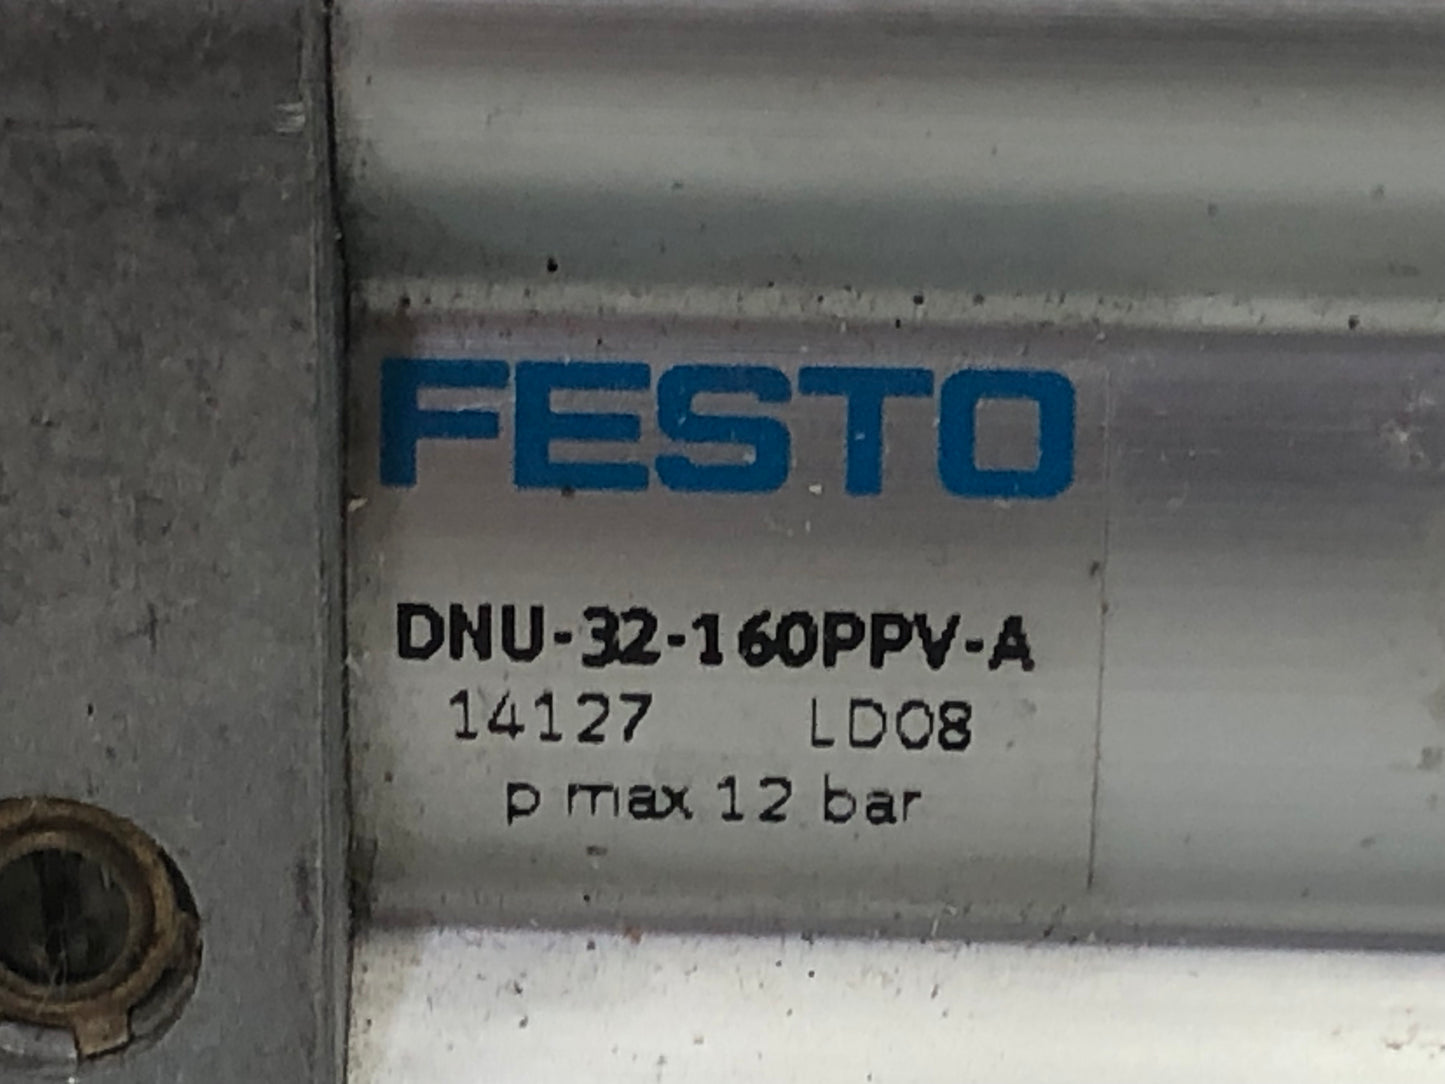 Festo DNU-32-160-PPV-A Standard Cylinder 14127 Pneumatic Cylinder Max. 12 BAR